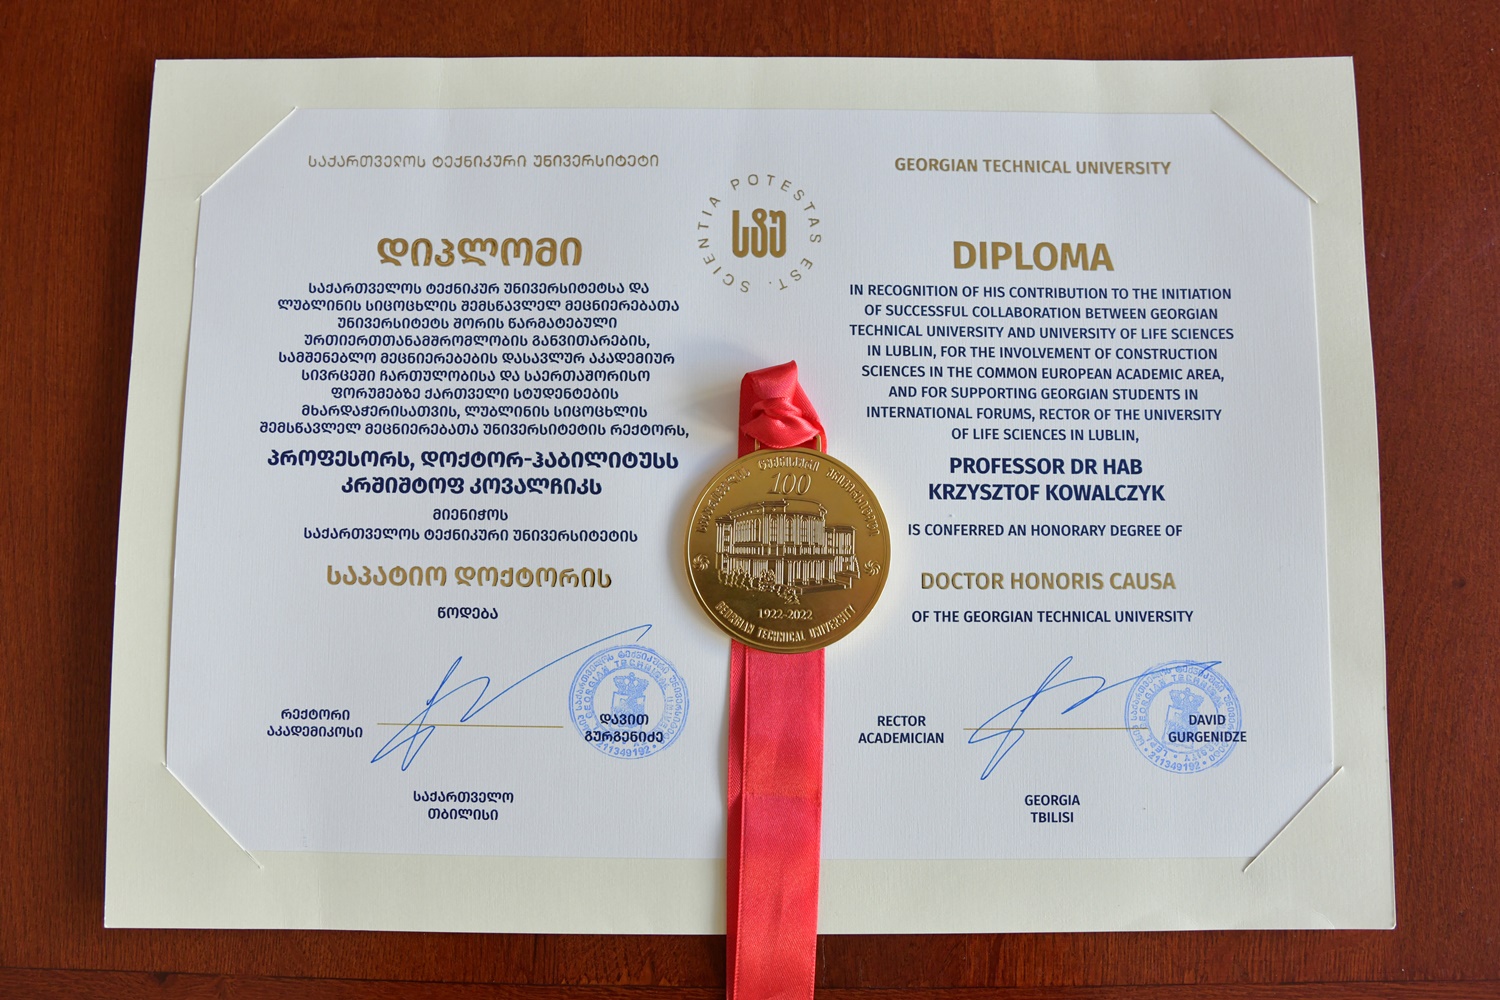 dyplom i medal honoris causa